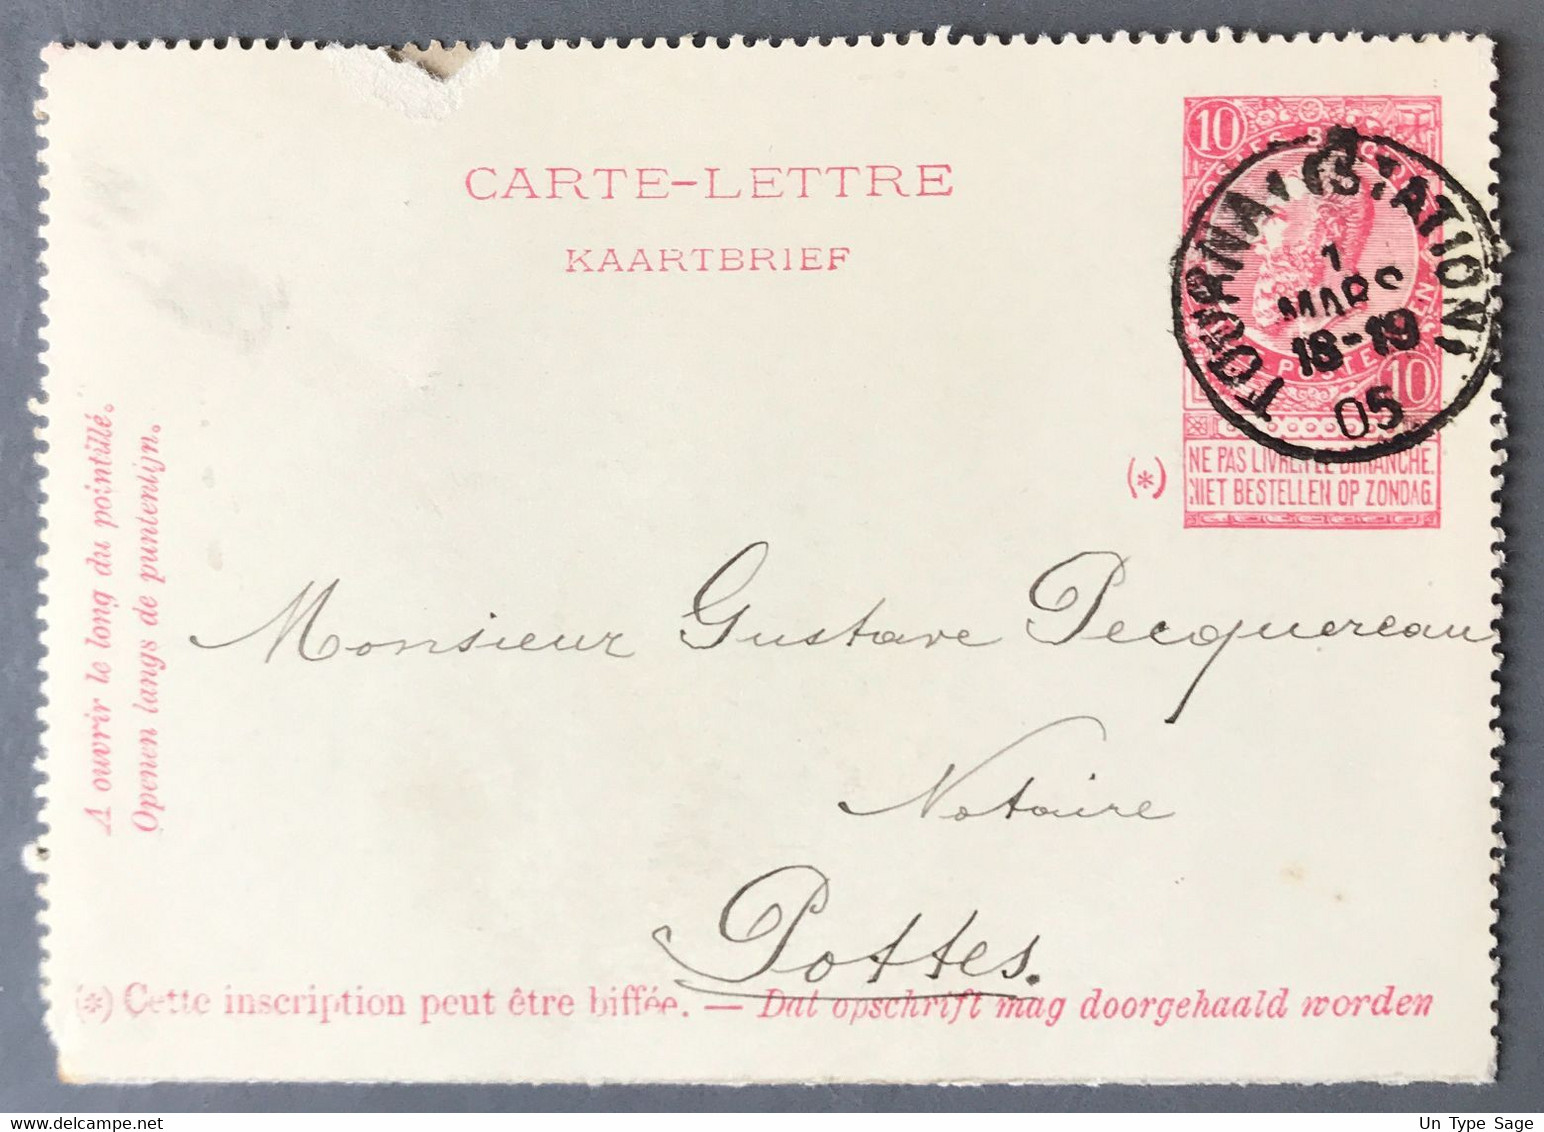 Belgique Entier Type N°58 - Cachet TOURNAI (STATION) DEPART 1.3.1905 - (A409) - Cartes-lettres